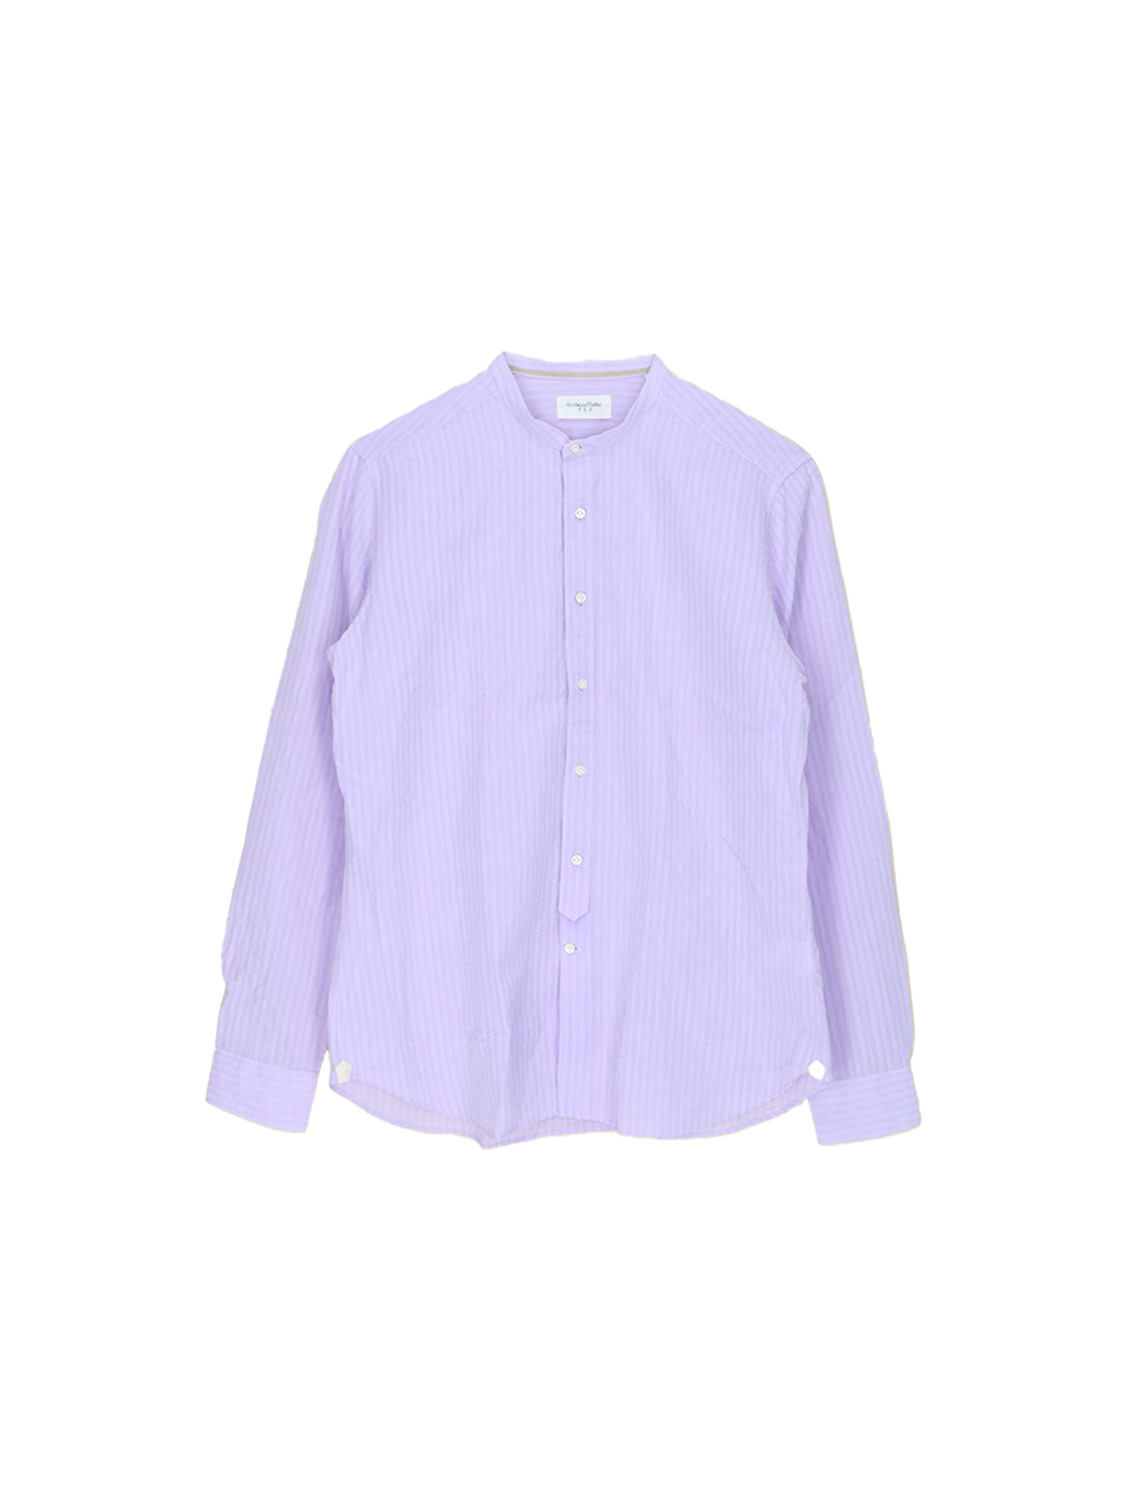 Tintoria Mattei 954 Cotton and linen shirt  lila 40